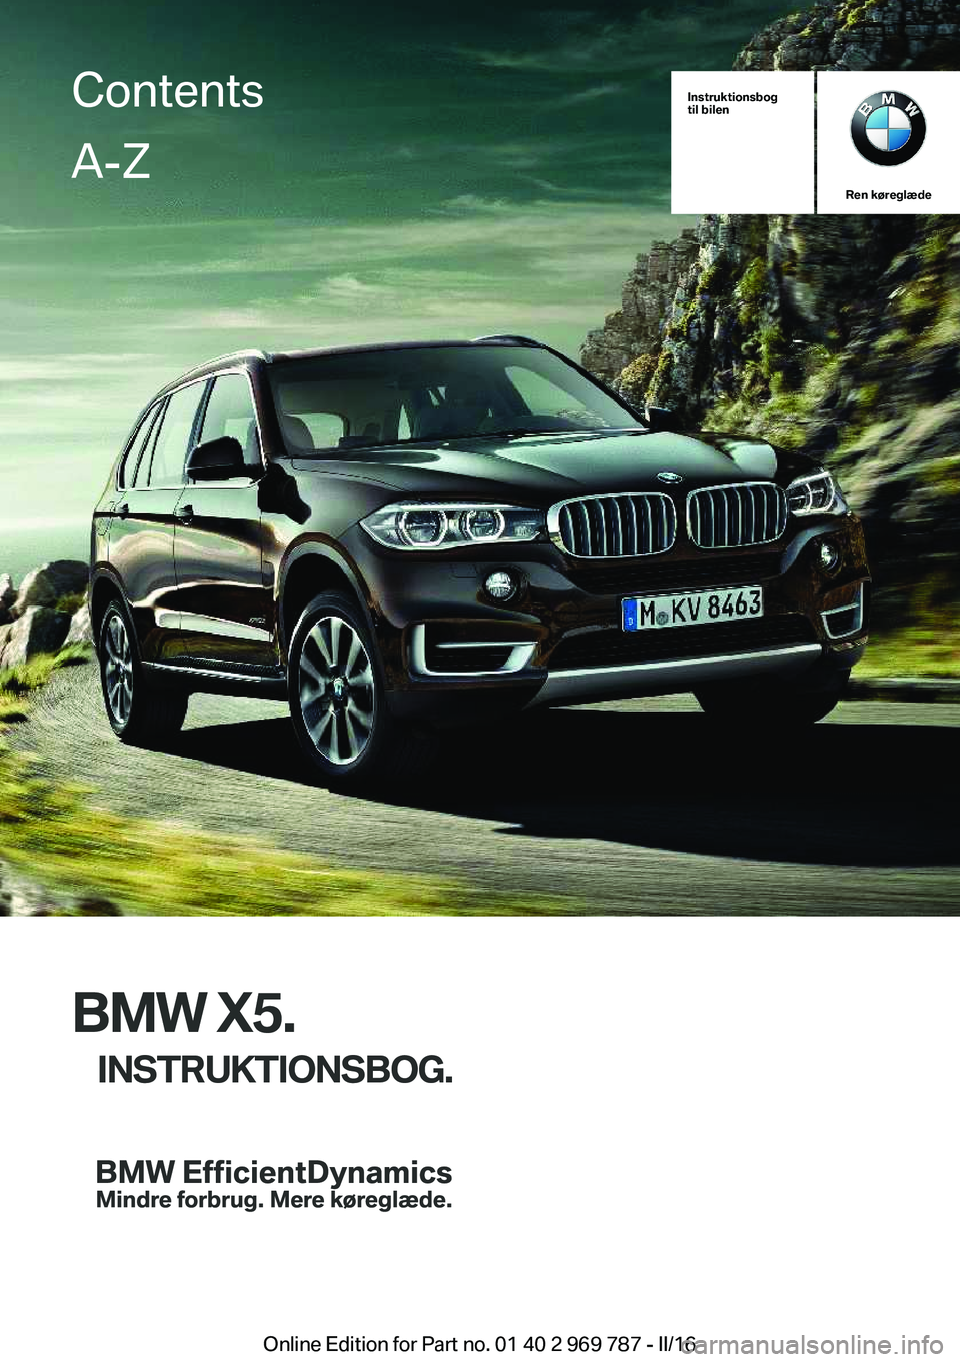 BMW X5 2016  InstruktionsbØger (in Danish) Instruktionsbog
til bilen
Ren køreglæde
BMW X5.
INSTRUKTIONSBOG.
ContentsA-Z
Online Edition for Part no. 01 40 2 969 787 - II/16   